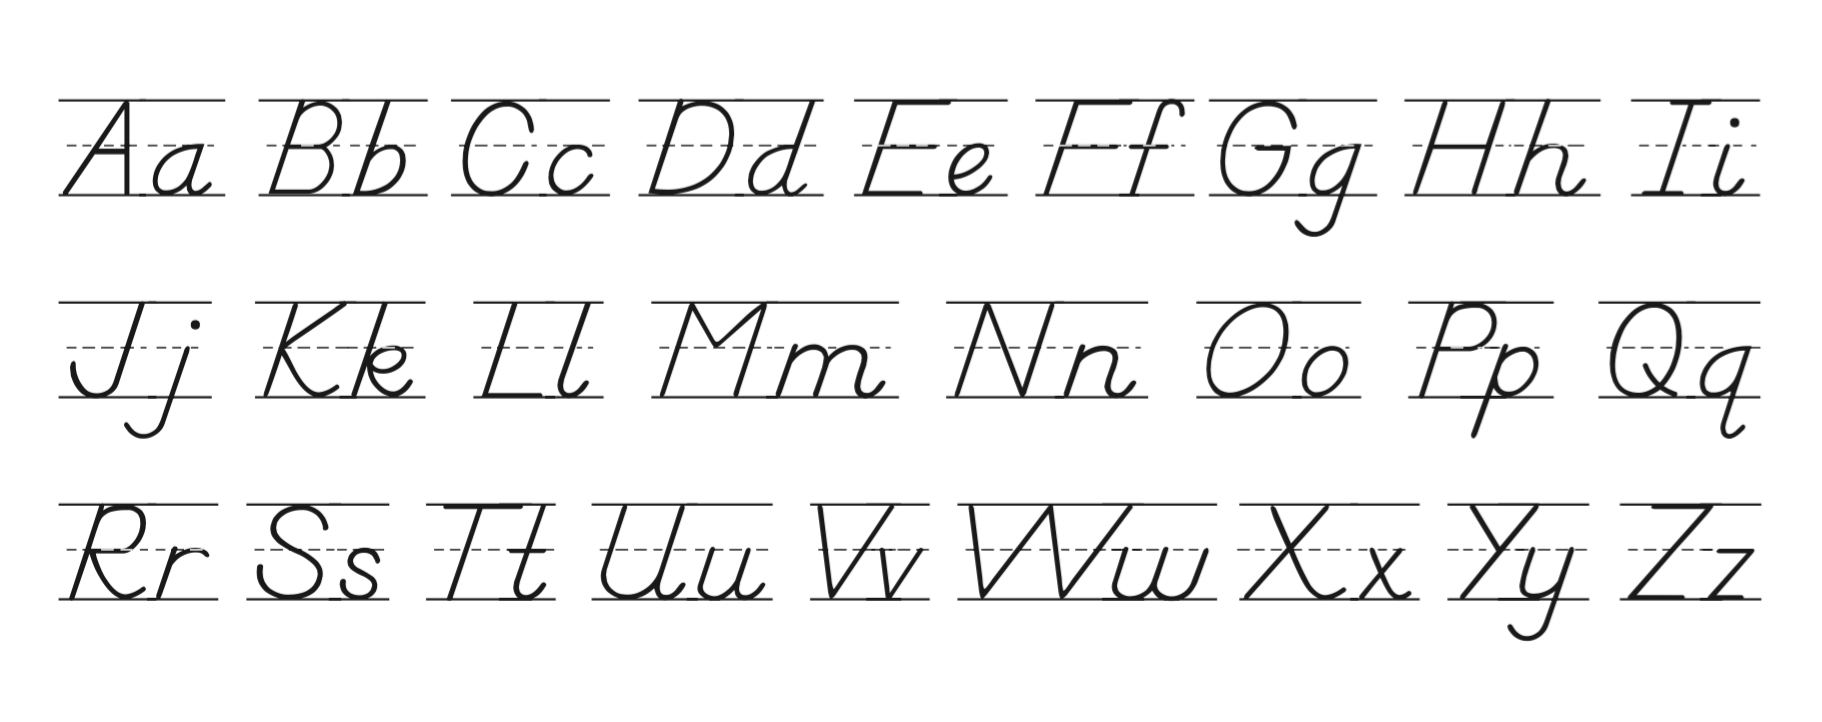 dnealian cursive alphabet line alphabetworksheetsfreecom